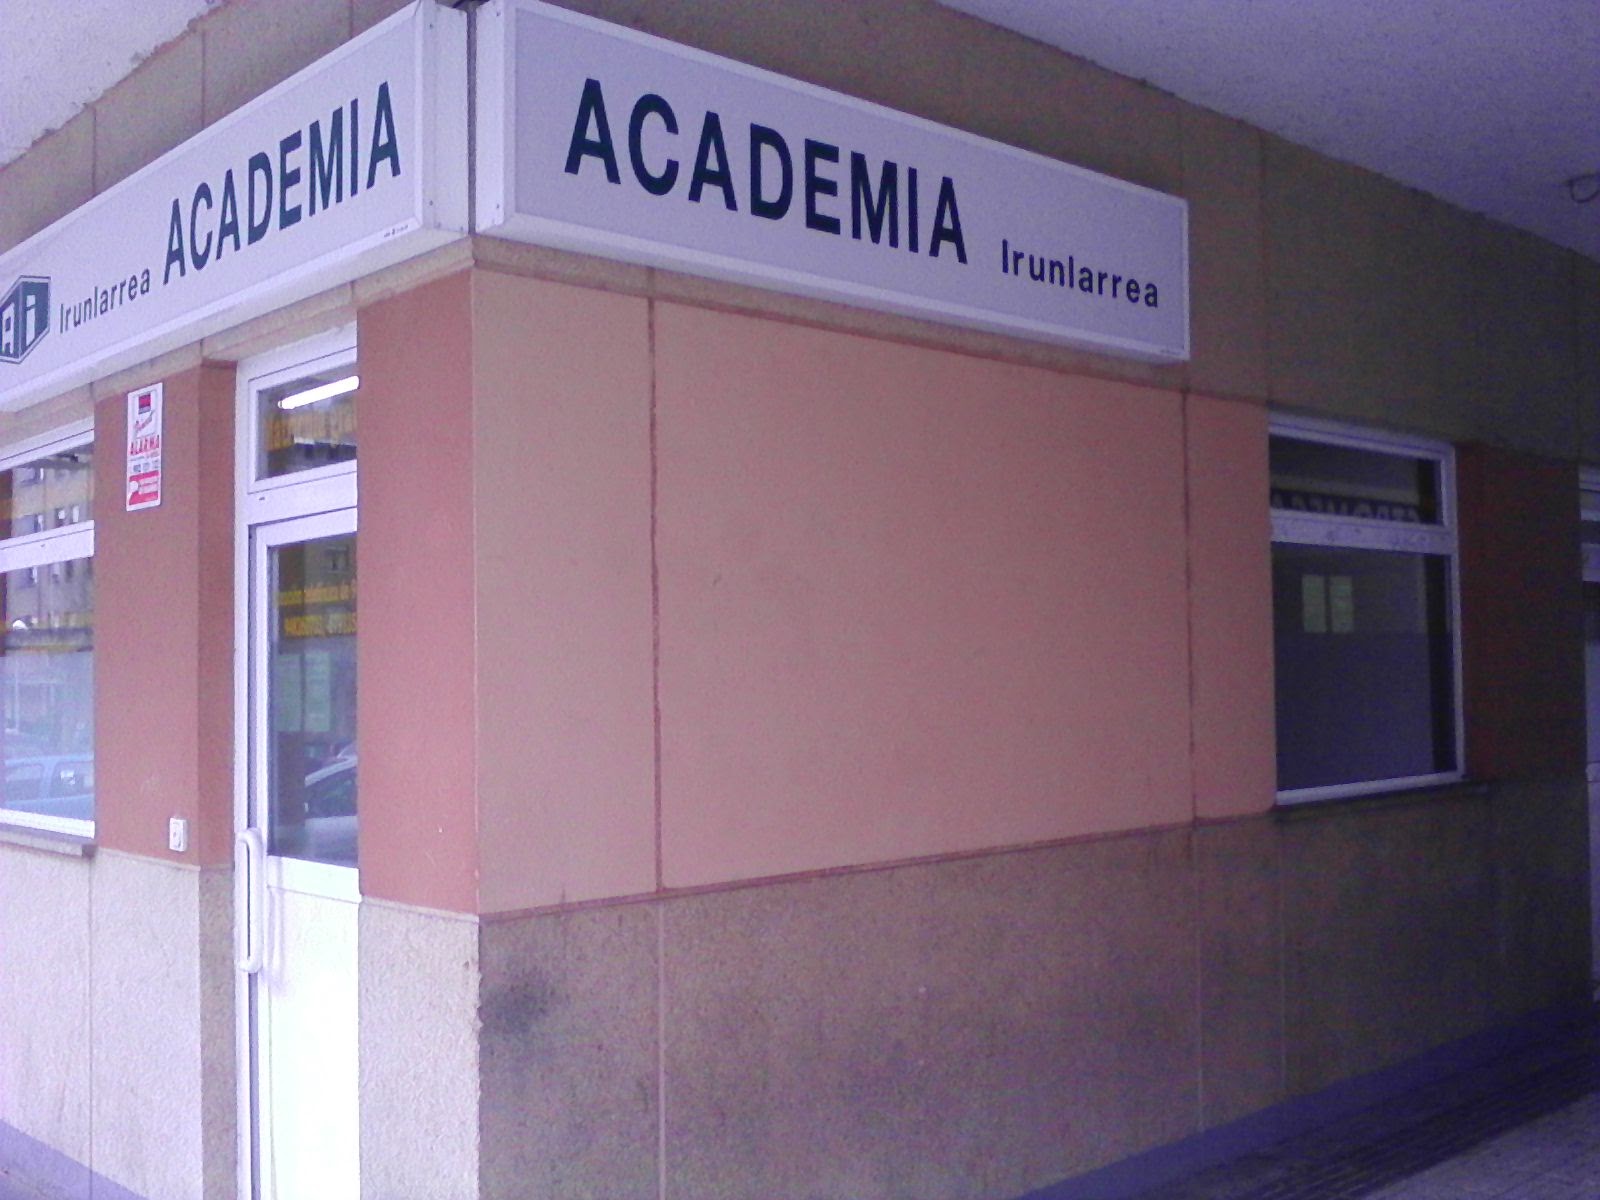 (c) Academiairunlarrea.com